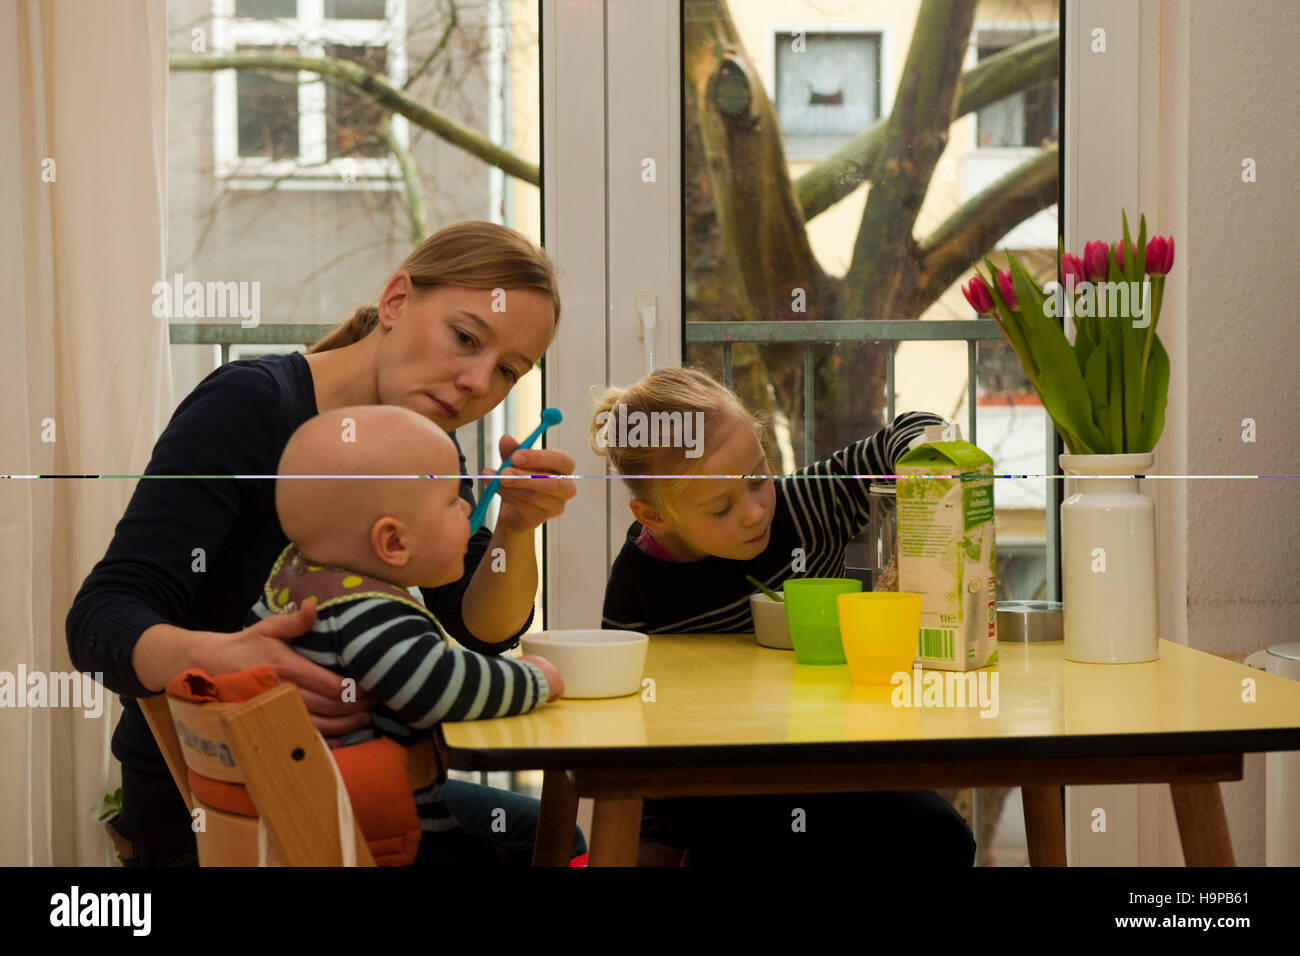 Deutschland, junge Familie mit Kindern in der Küche Stock Photo